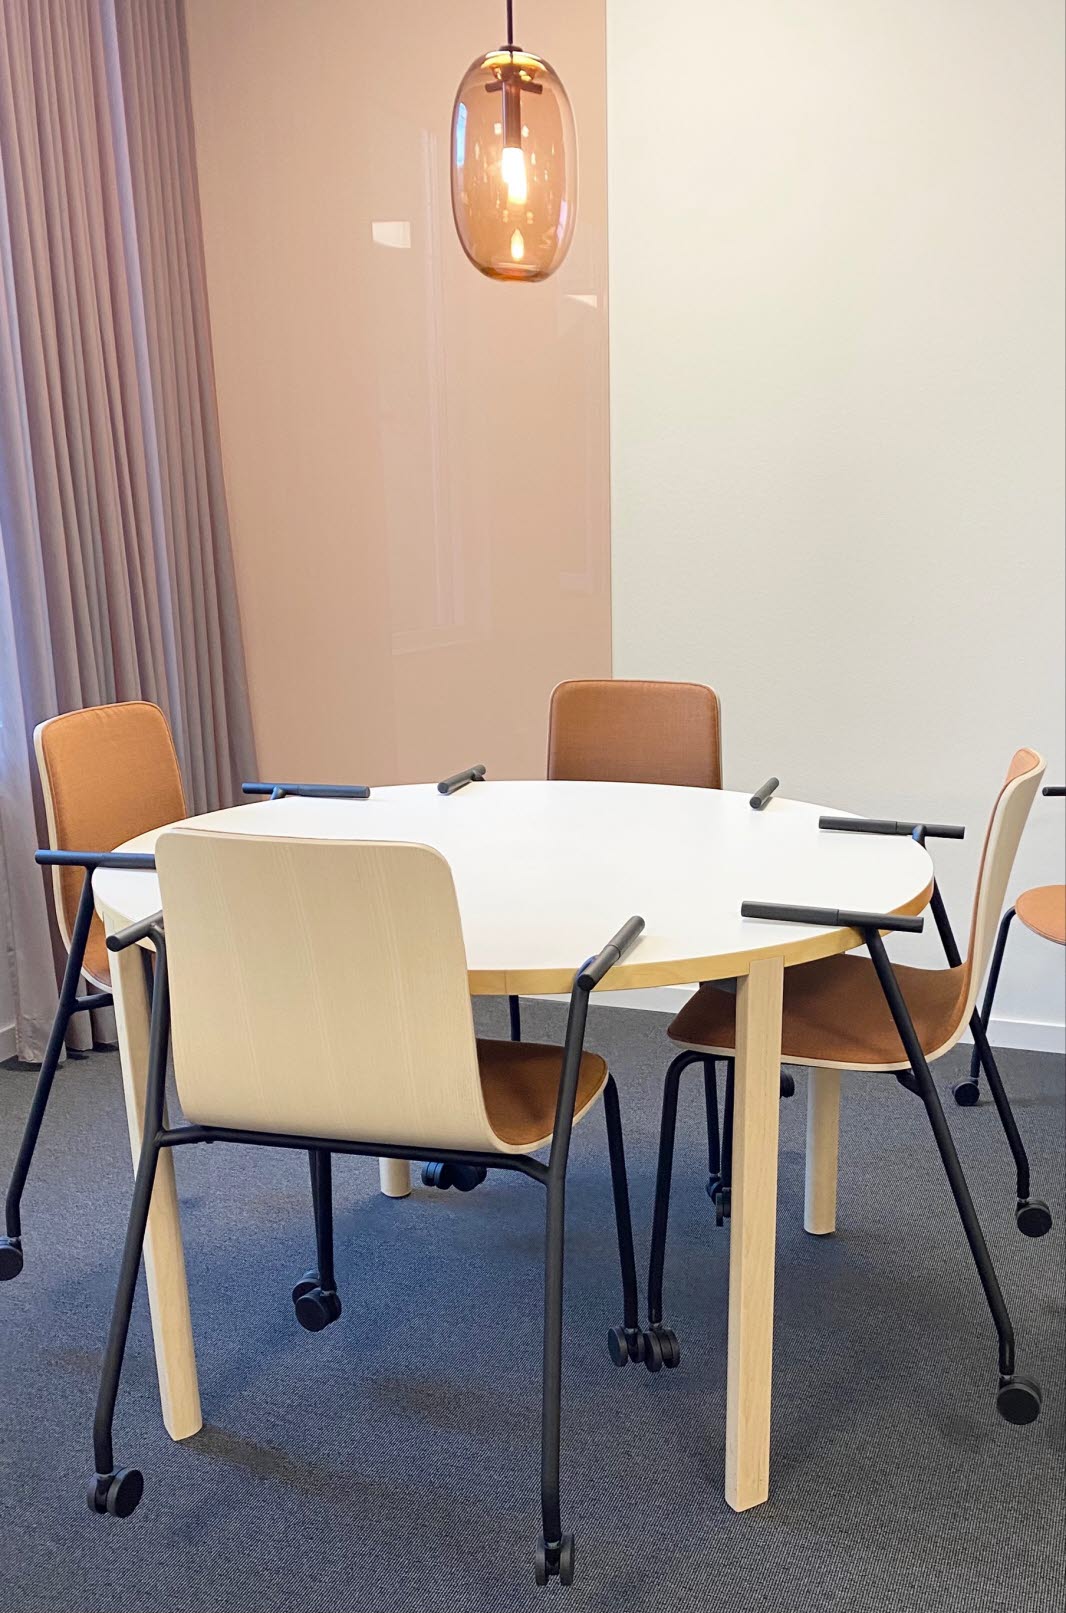 Bord med fyra stolar. Ovanför bordet hänger en orange lampa i droppform. 